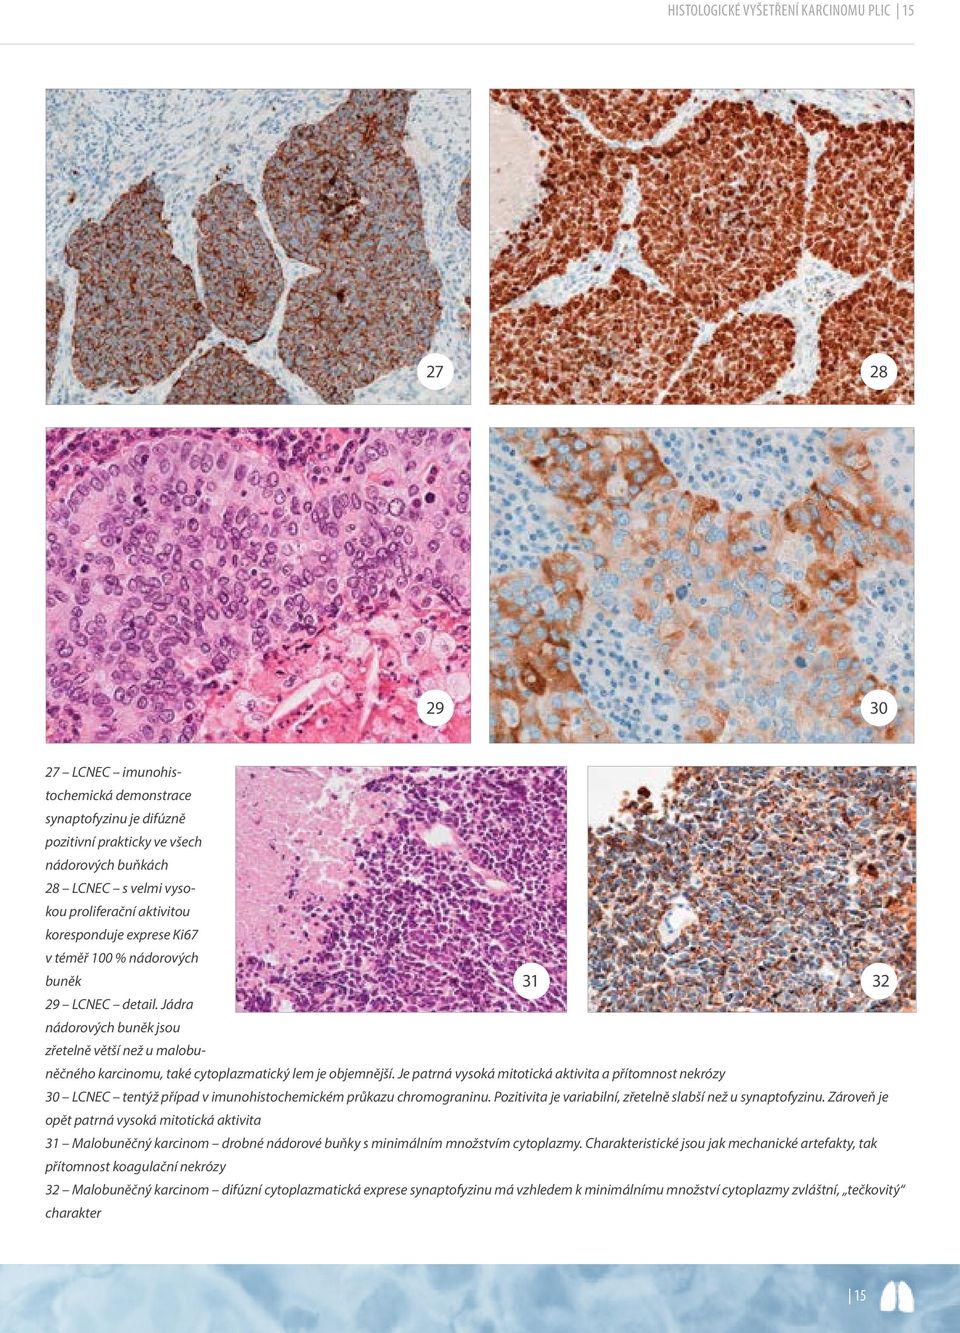 Jádra nádorových buněk jsou zřetelně větší než u malobuněčného 31 32 karcinomu, také cytoplazmatický lem je objemnější.